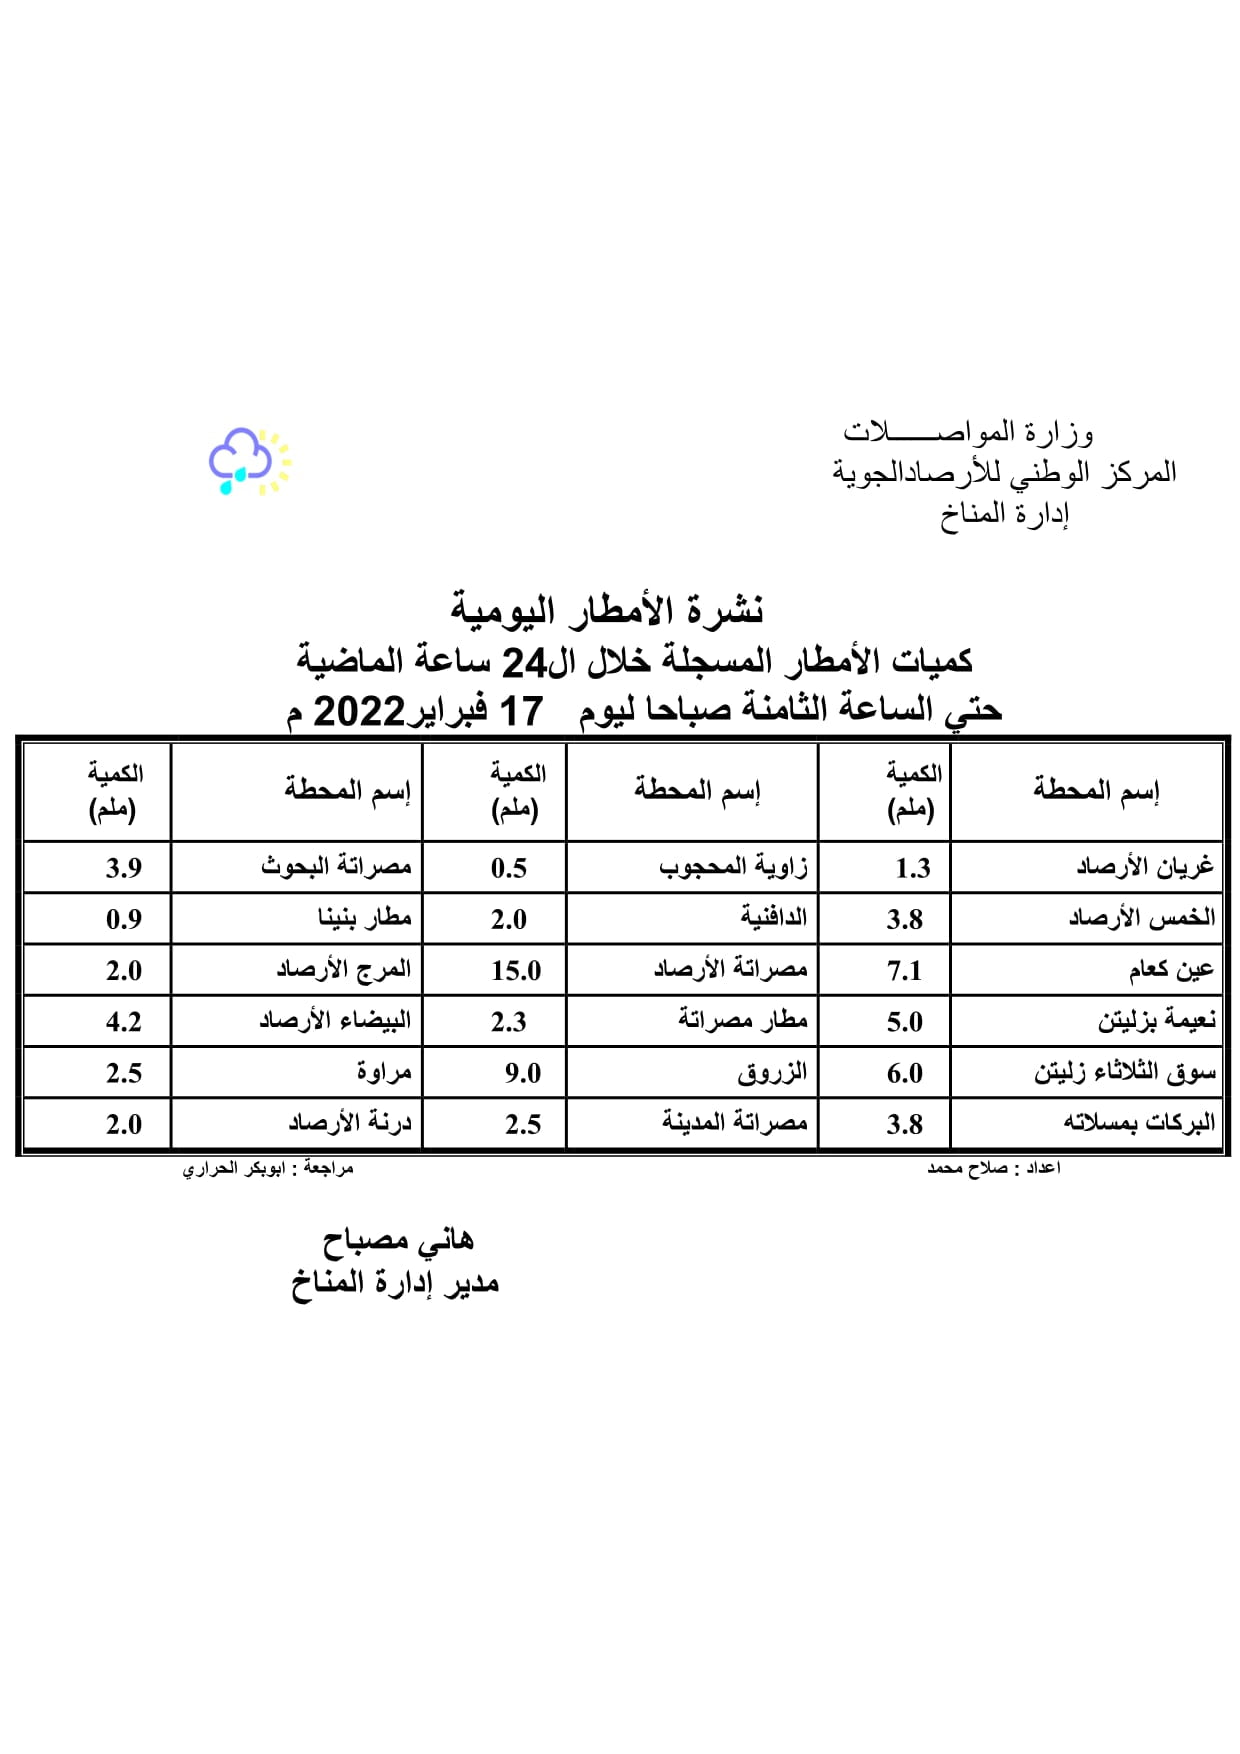 الأحوال الجوية المتوقعة على ليبيا خلال الثلاثة الأيام القادمة بداية من اليوم الخميس 17–02–2022